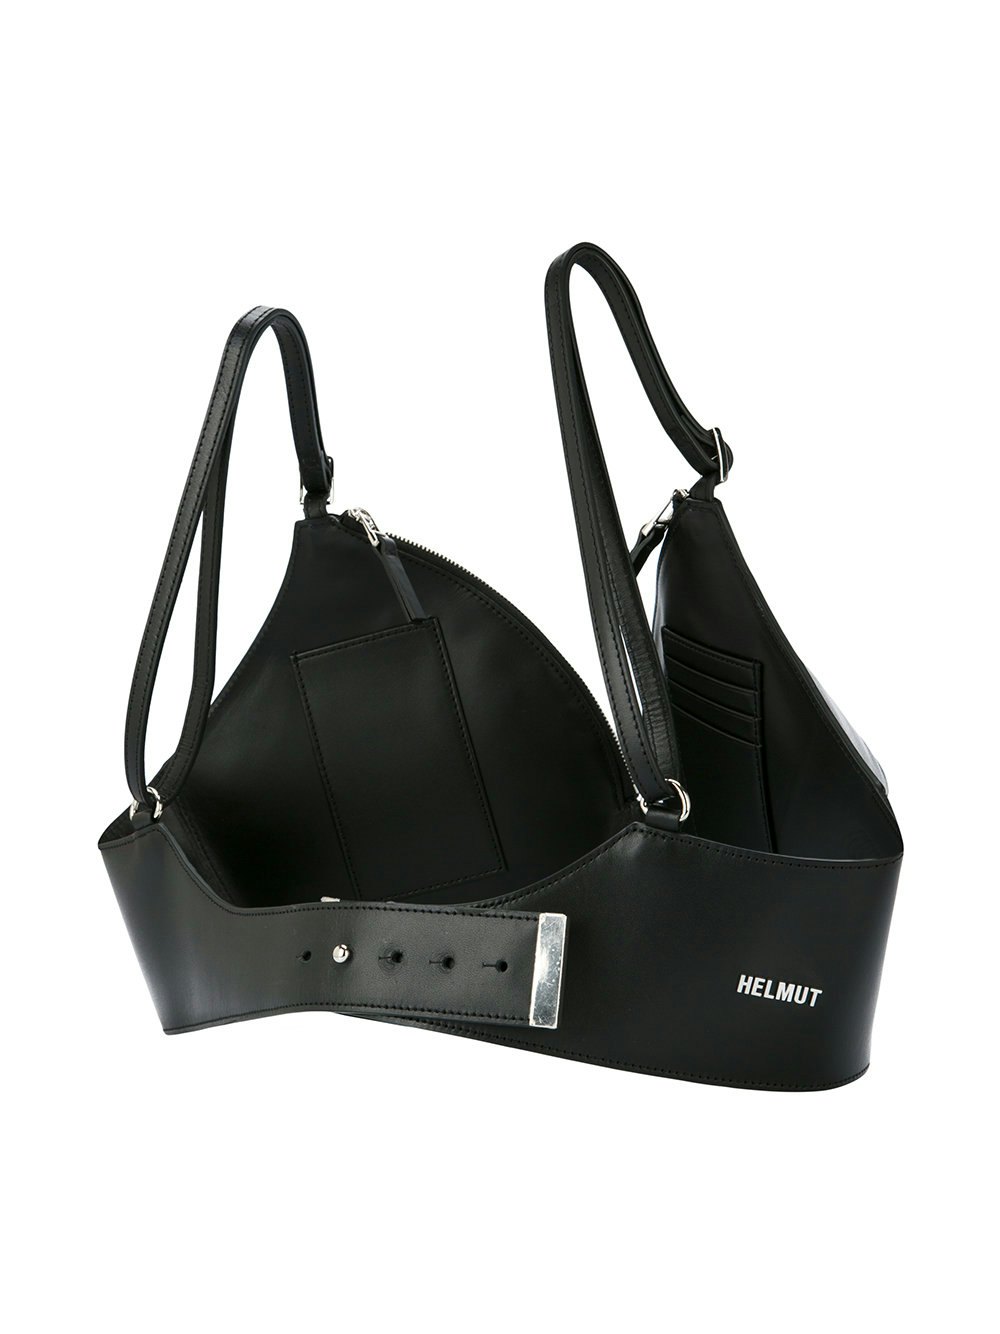 Helmut Lang's Bra Purse Is An Undergarment & A Handbag, So That's Smart